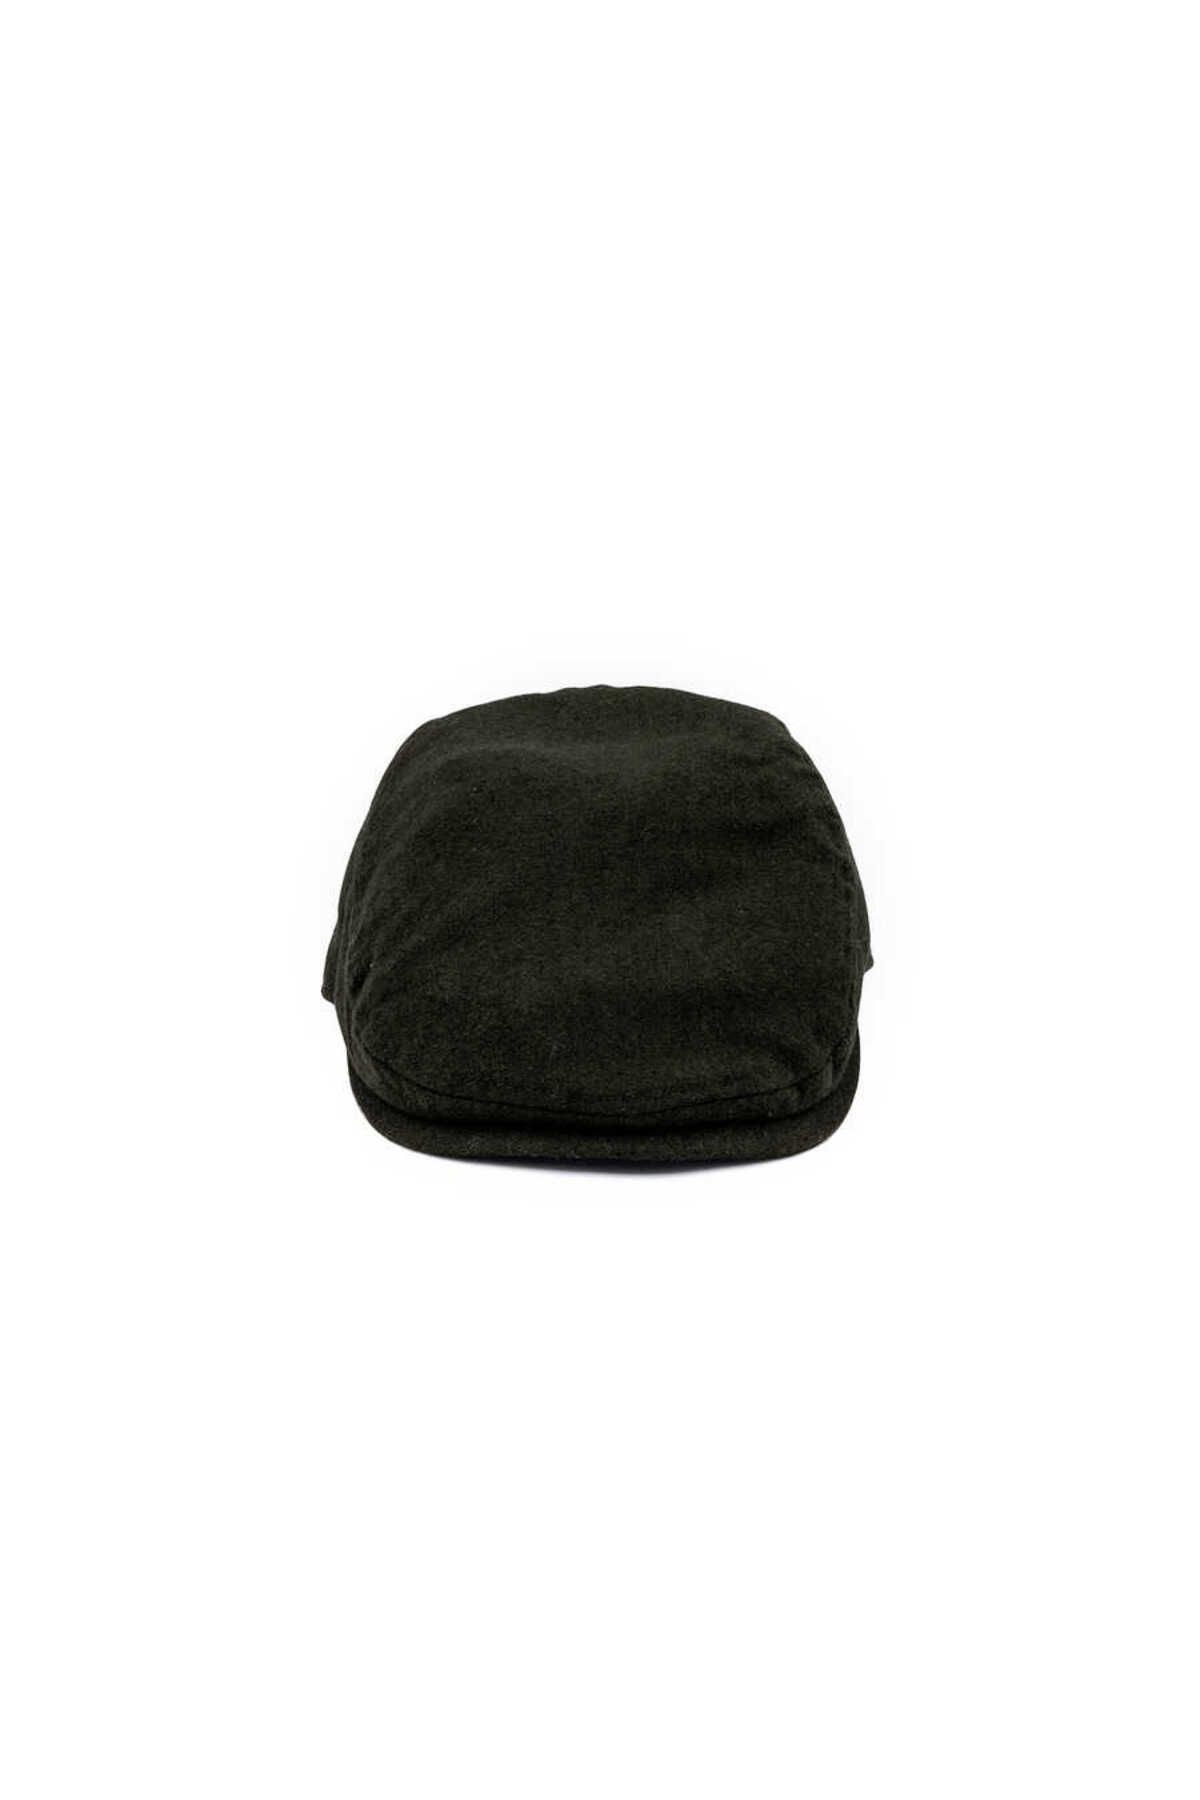 Goorin Bros Goorin Bros Casket Hat 603-0005 Mikey Green S/M